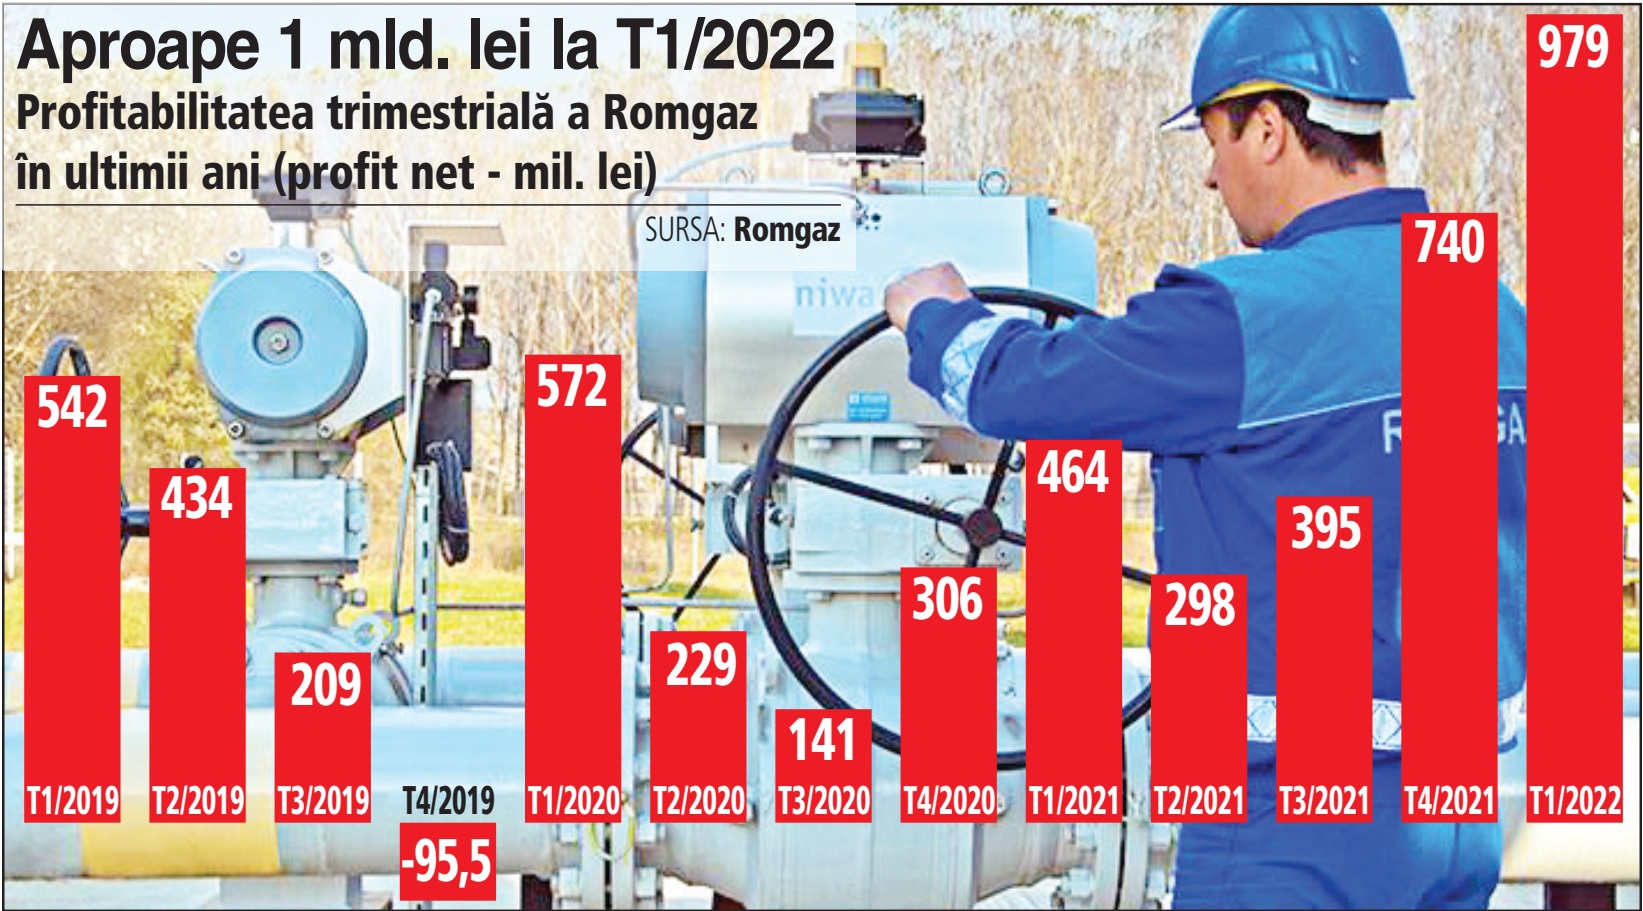 Preţurile record la gaze naturale dublează profitul Romgaz la 1 mld. lei în T1/2022 şi triplează afacerile la 4 mld. lei. Statul îşi ia porţia de 2,3 mld. lei prin impozite